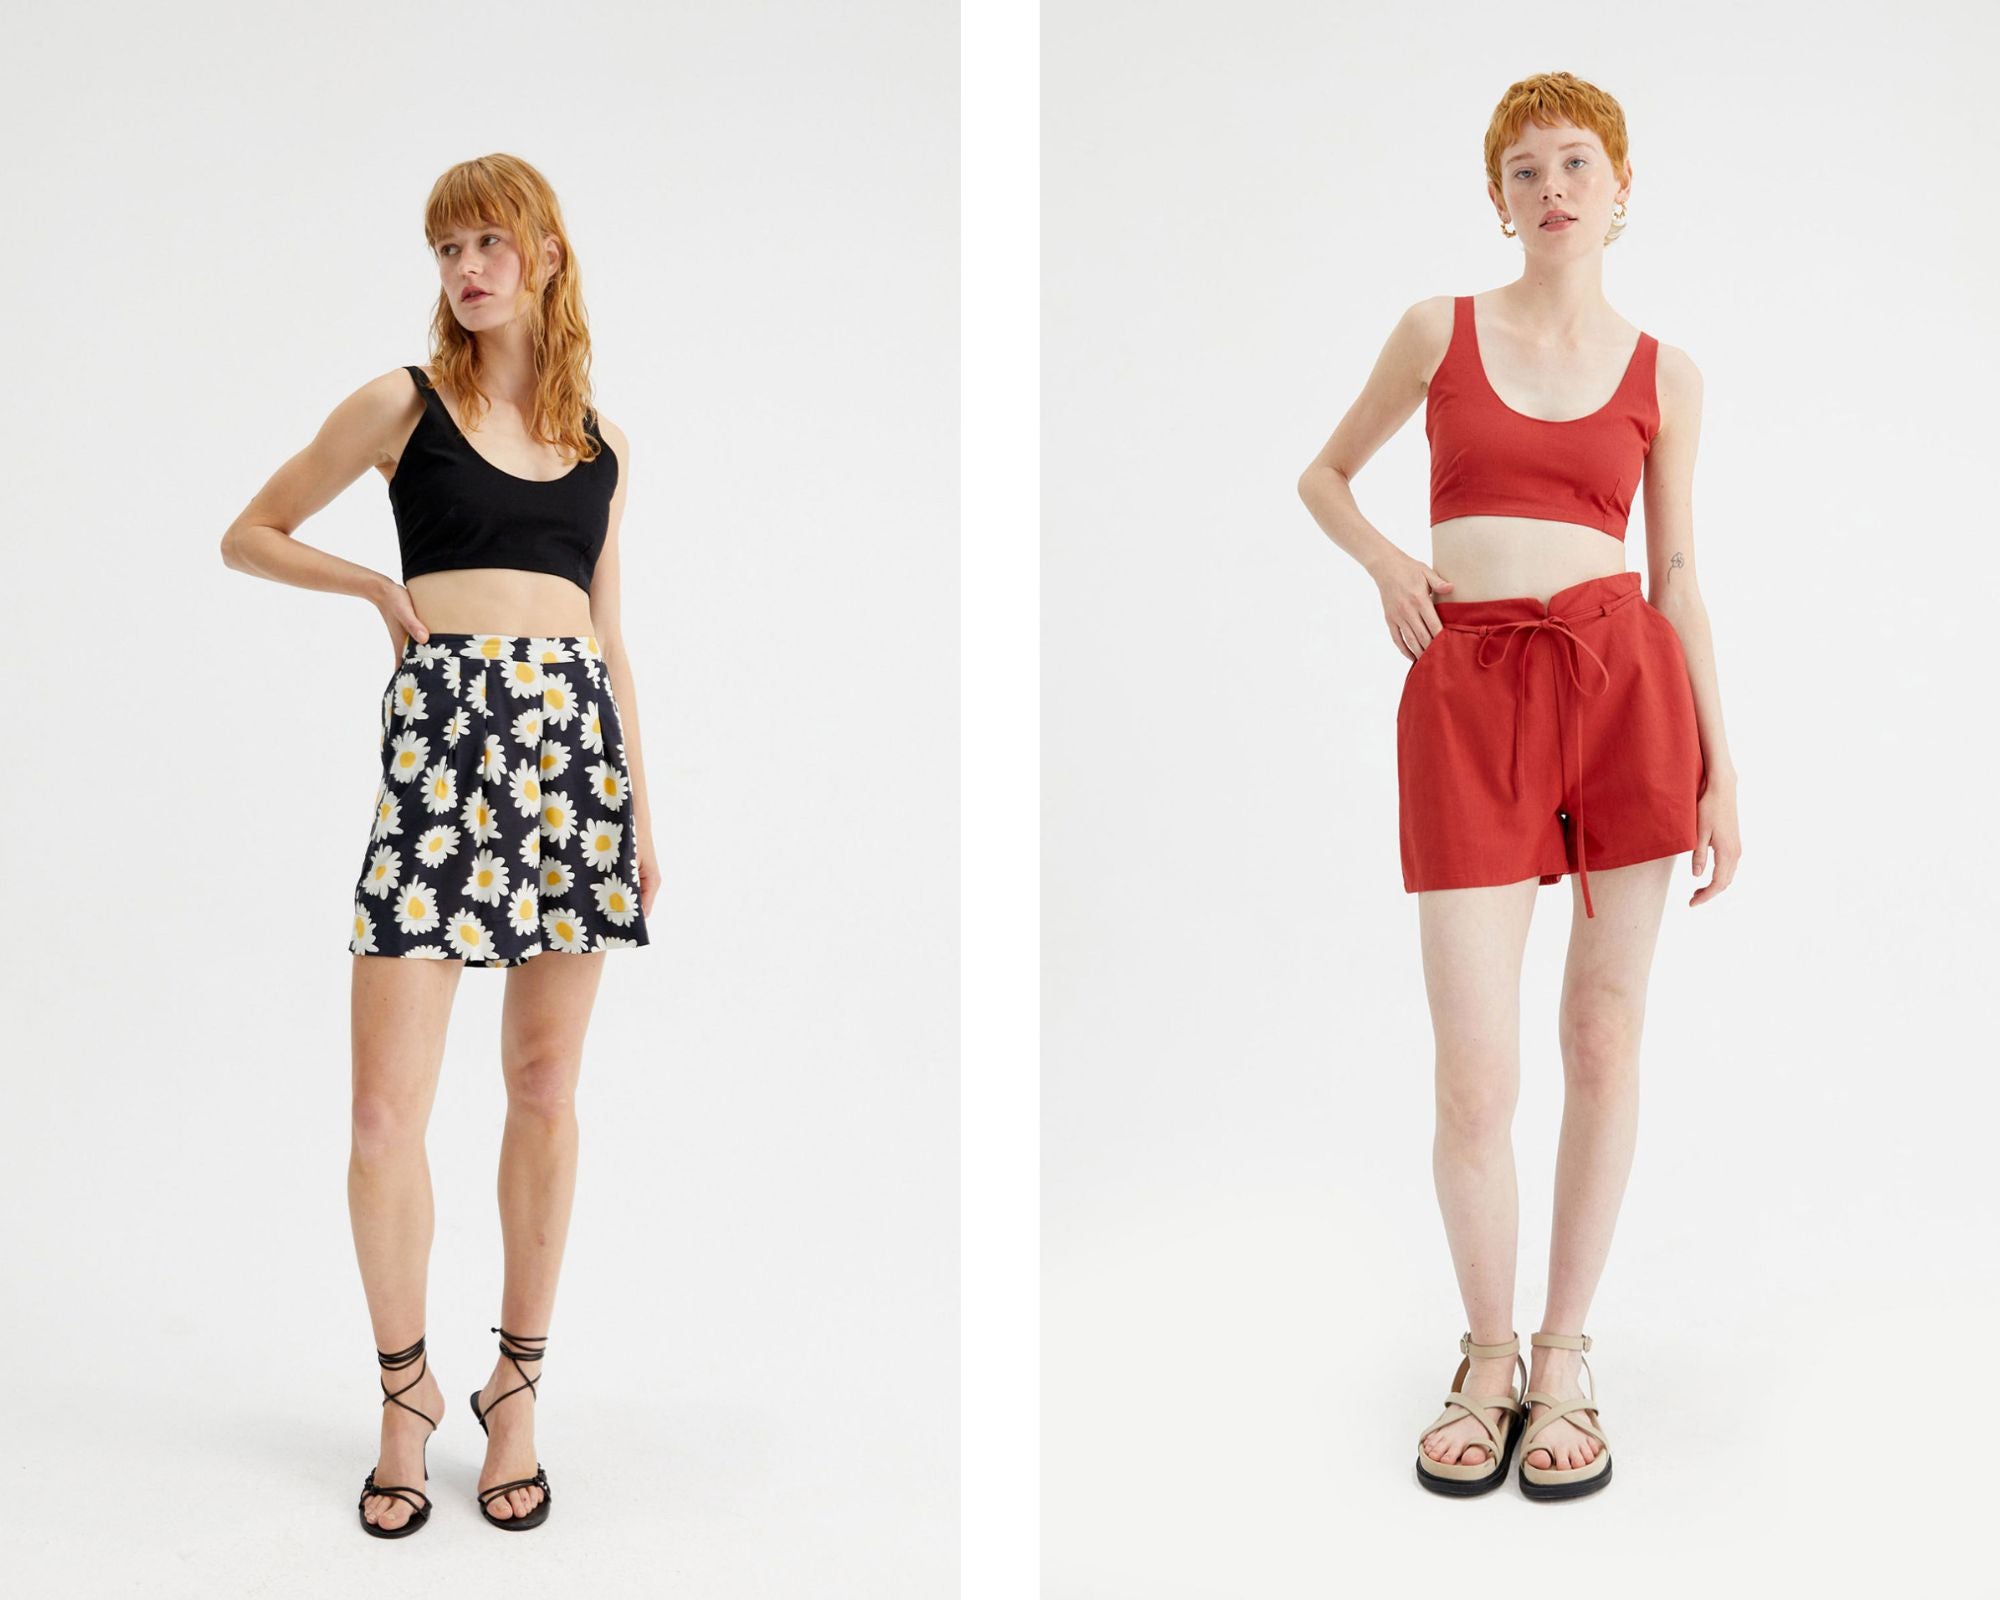 Modelos con estilismos de verano de Compañía Fantástica compuestos por shorts y crop tops sin mangas